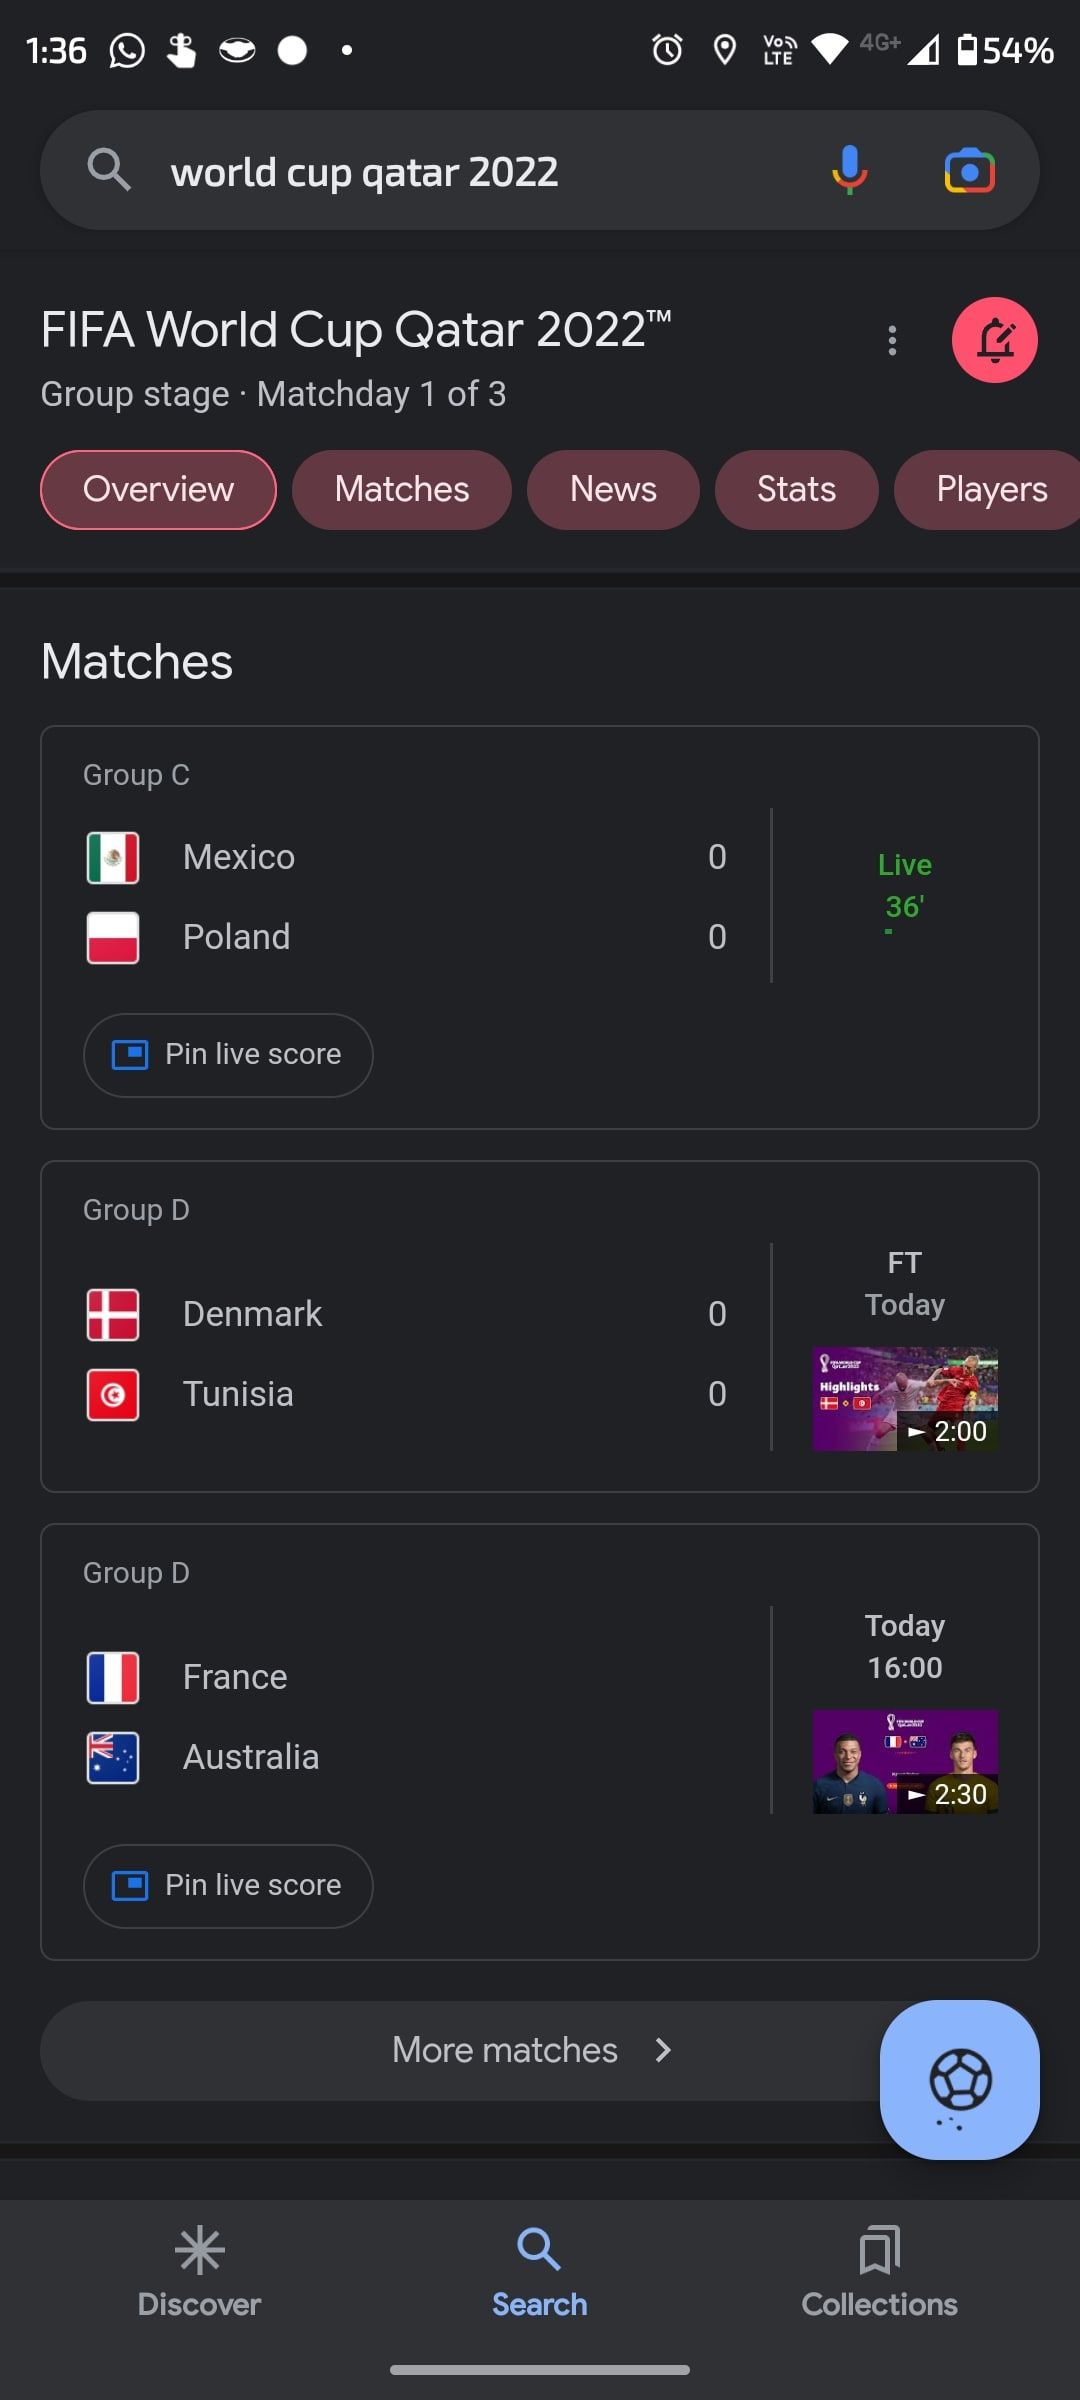 Aperçu de la Coupe du monde de Google avec des boîtes et des drapeaux de pays